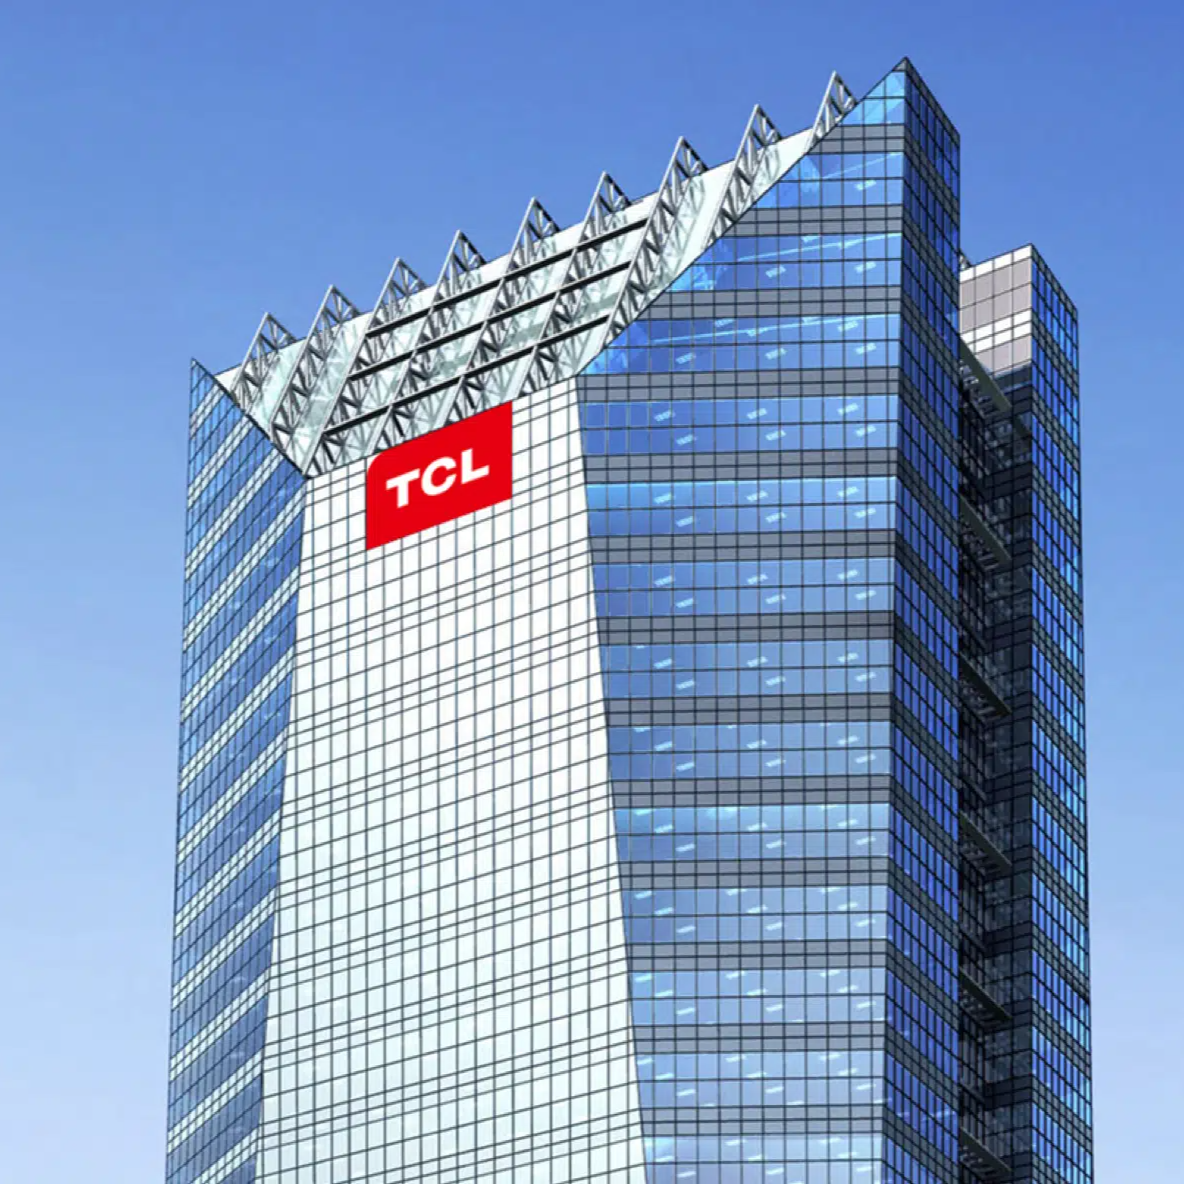 TCL科技集团股份有限公司成立于1982年，总部位于广东惠州 [19]  ，主营业务是半导体、电子产品及通讯设备、新型光电、液晶显示器件...